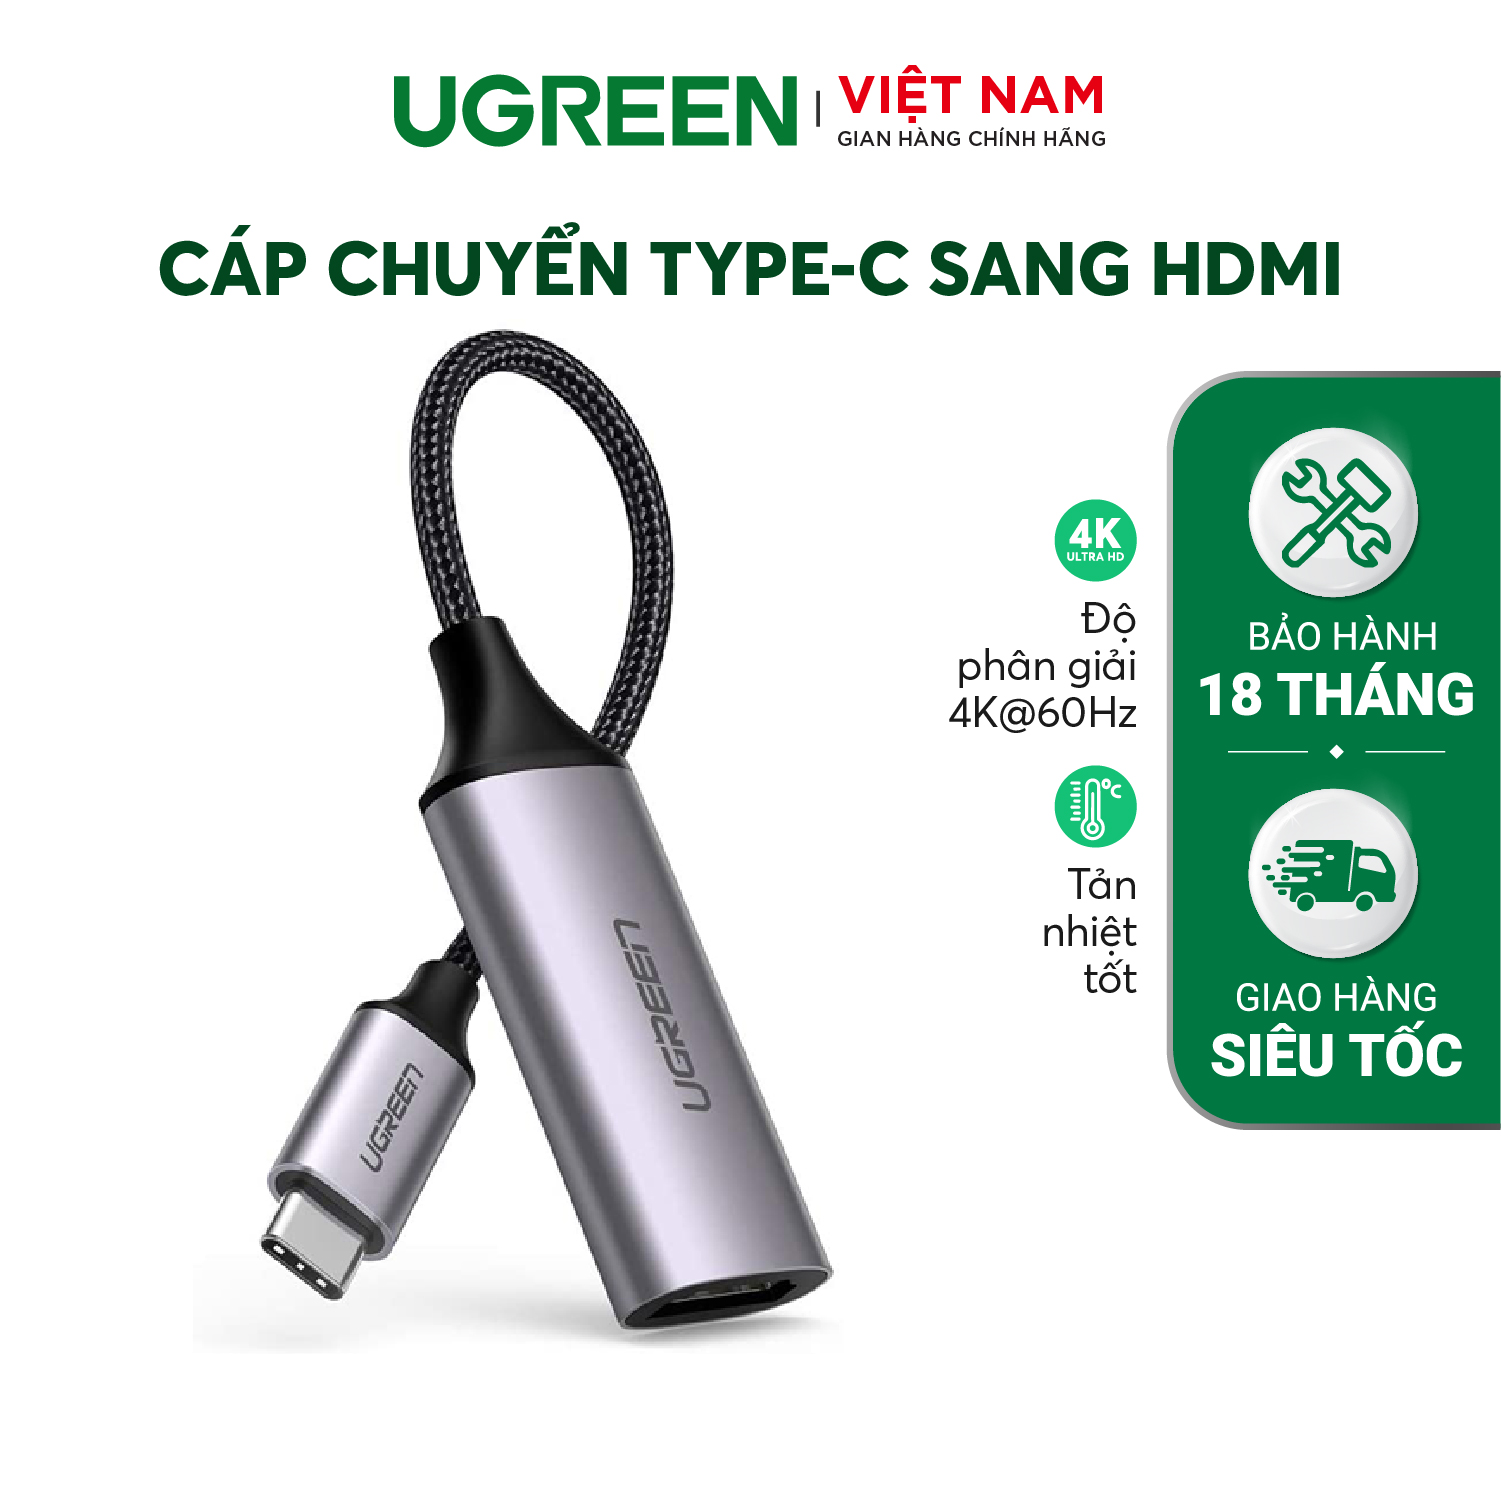 Cáp chuyển USB TYPE C sang HDMI UGREEN CM297 | Chuẩn HDMI 2.0 | Chipset VL100 và PS176 | Bảo hành 18 tháng 1 Đổi 1| 70444.